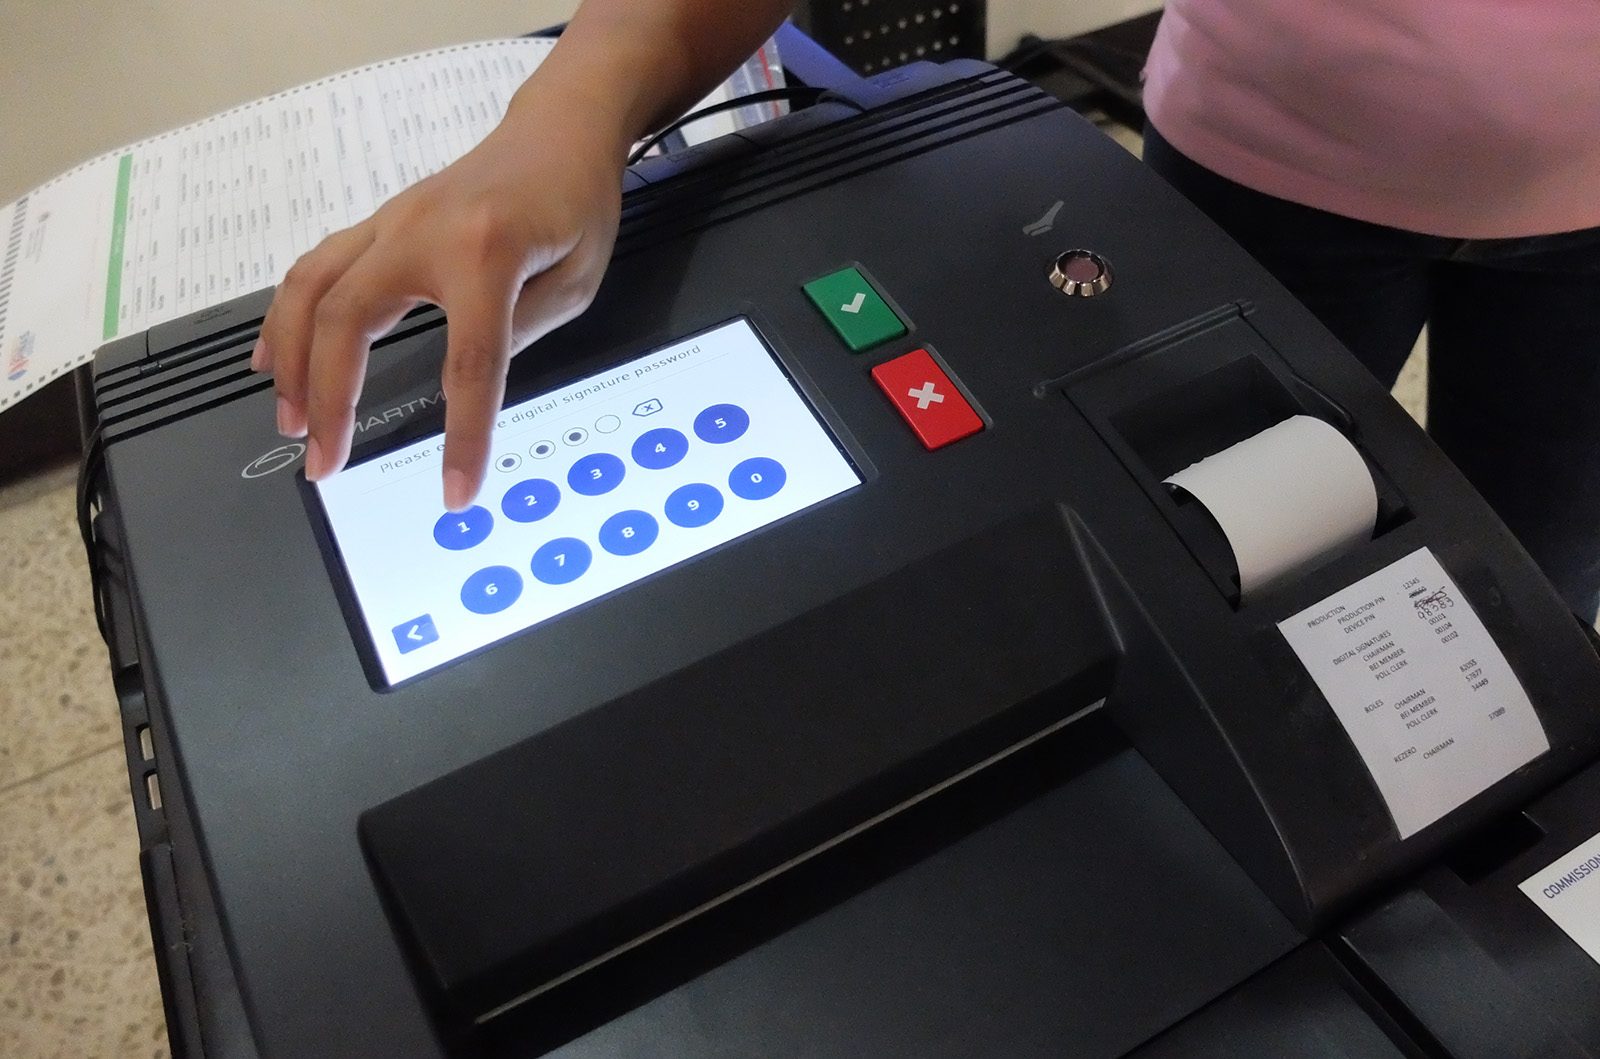 10% of machines in overseas absentee voting ‘defective’